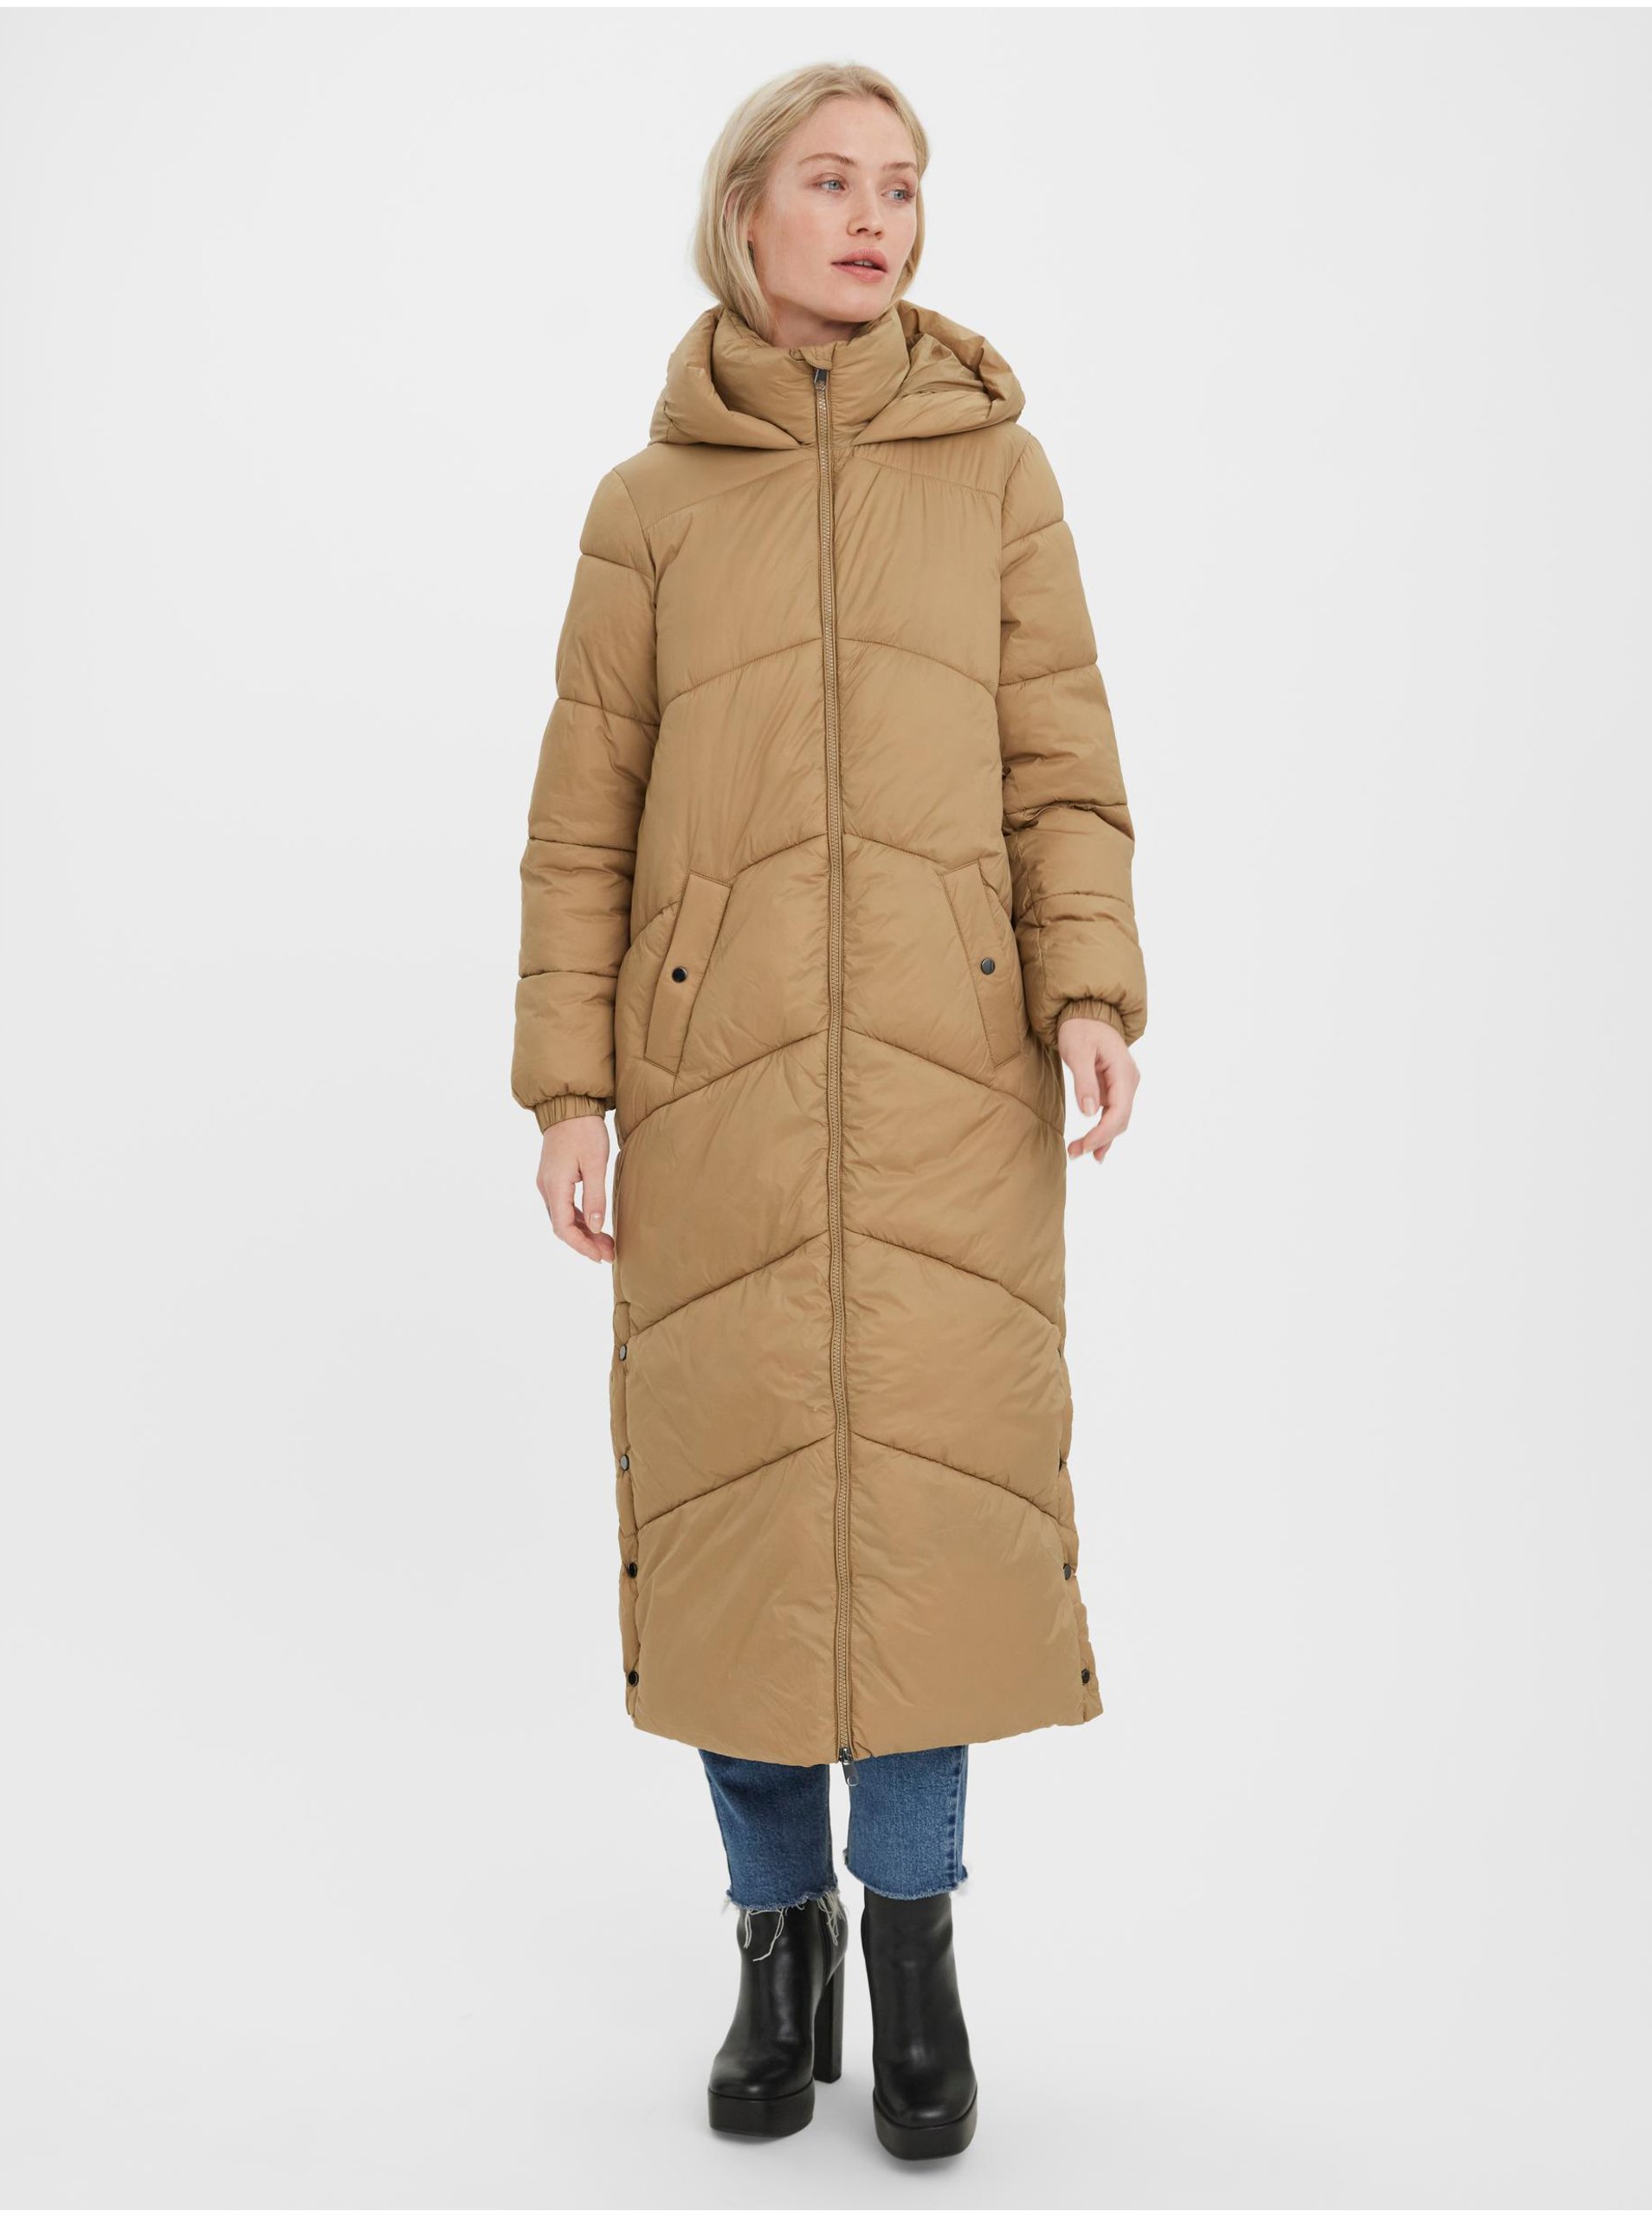 Brown quilted coat VERO MODA Uppsala - Women